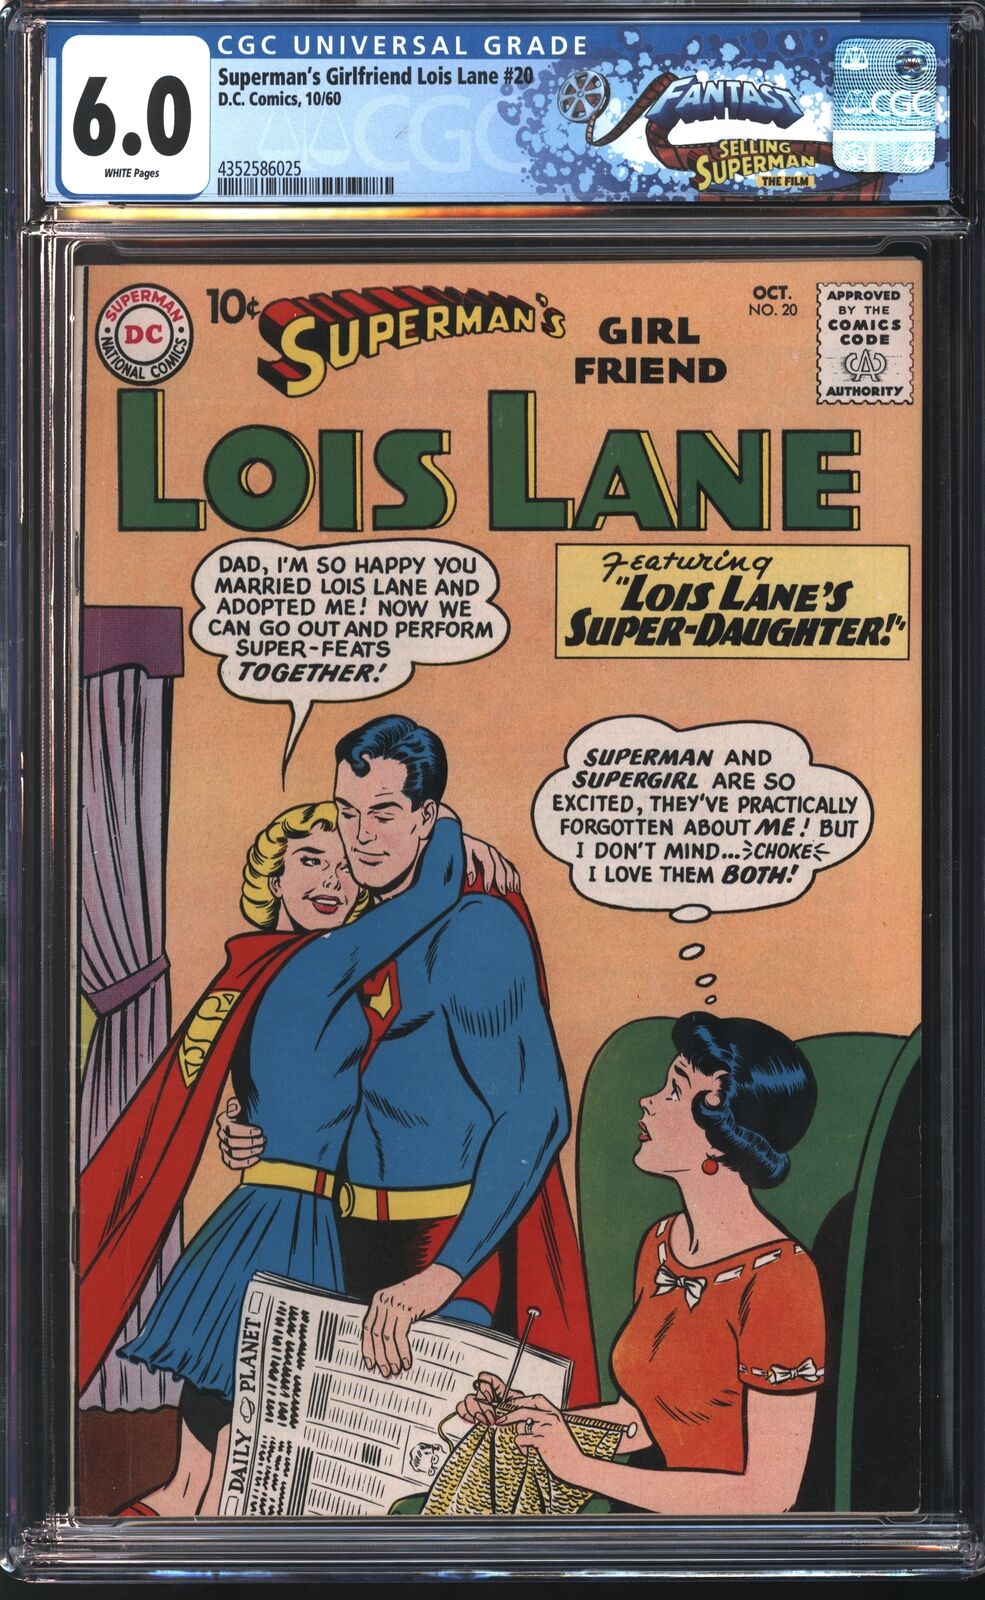 D.C Comics Superman's Girl Friend Lois Lane 20 10/60 FANTAST CGC 6.0 White Pages